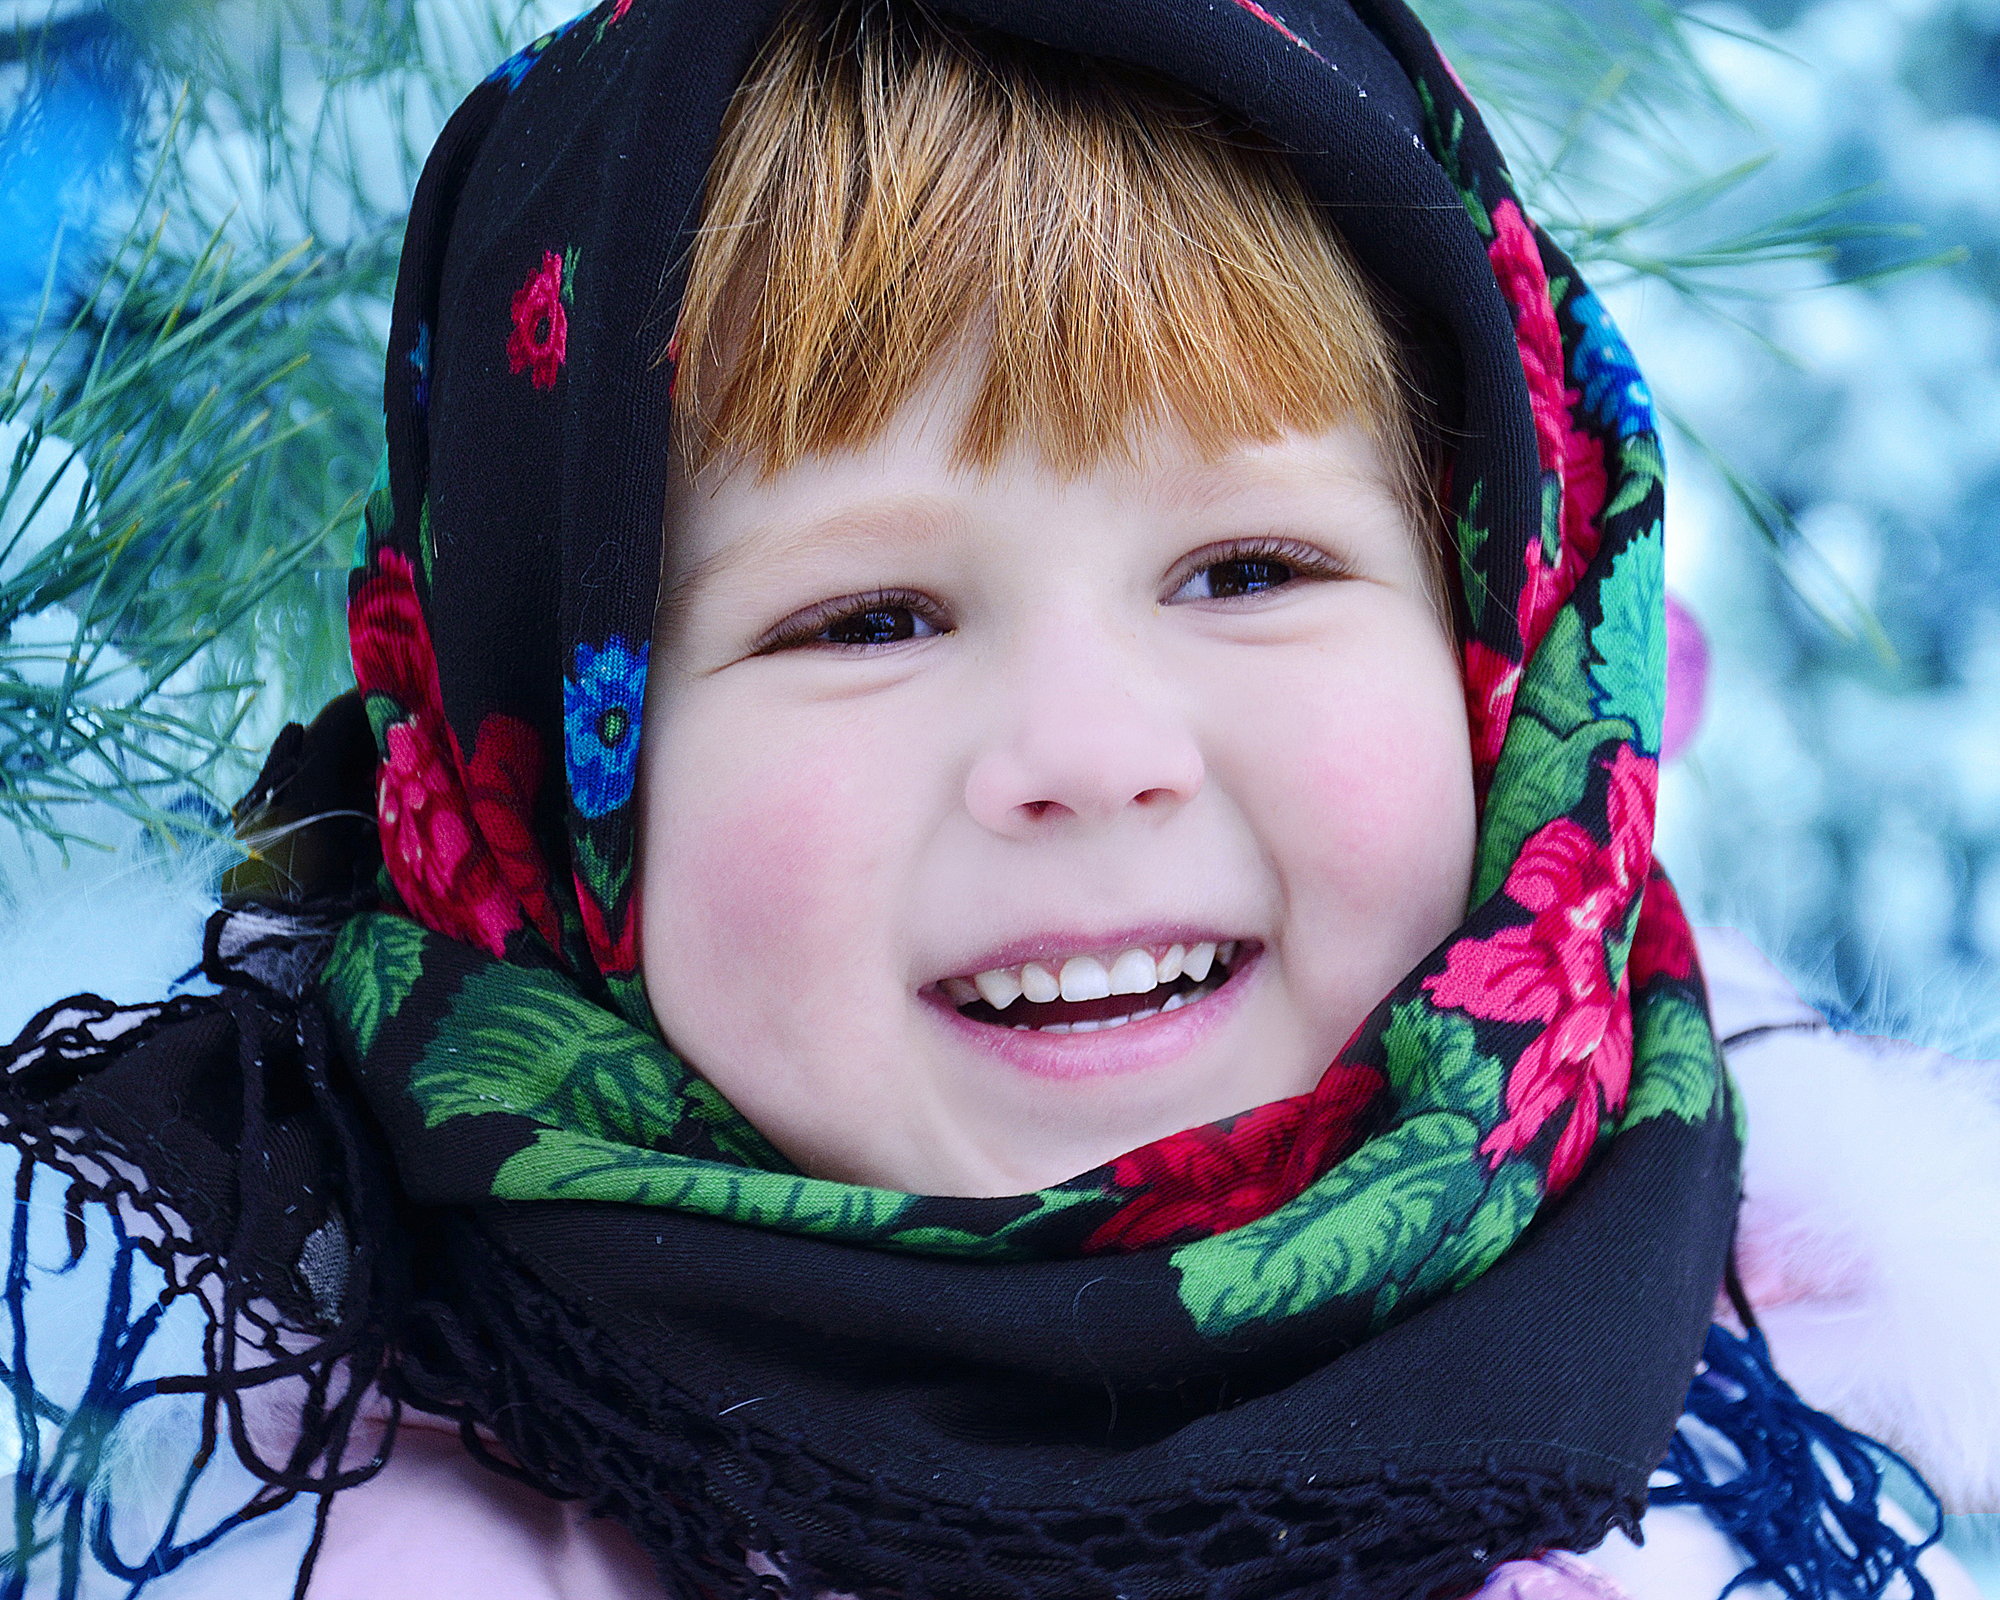 Конкурс фото россия. Ребенок в платке. Россия для детей. Подростки в платках. Русско-народный платок на ребенке.